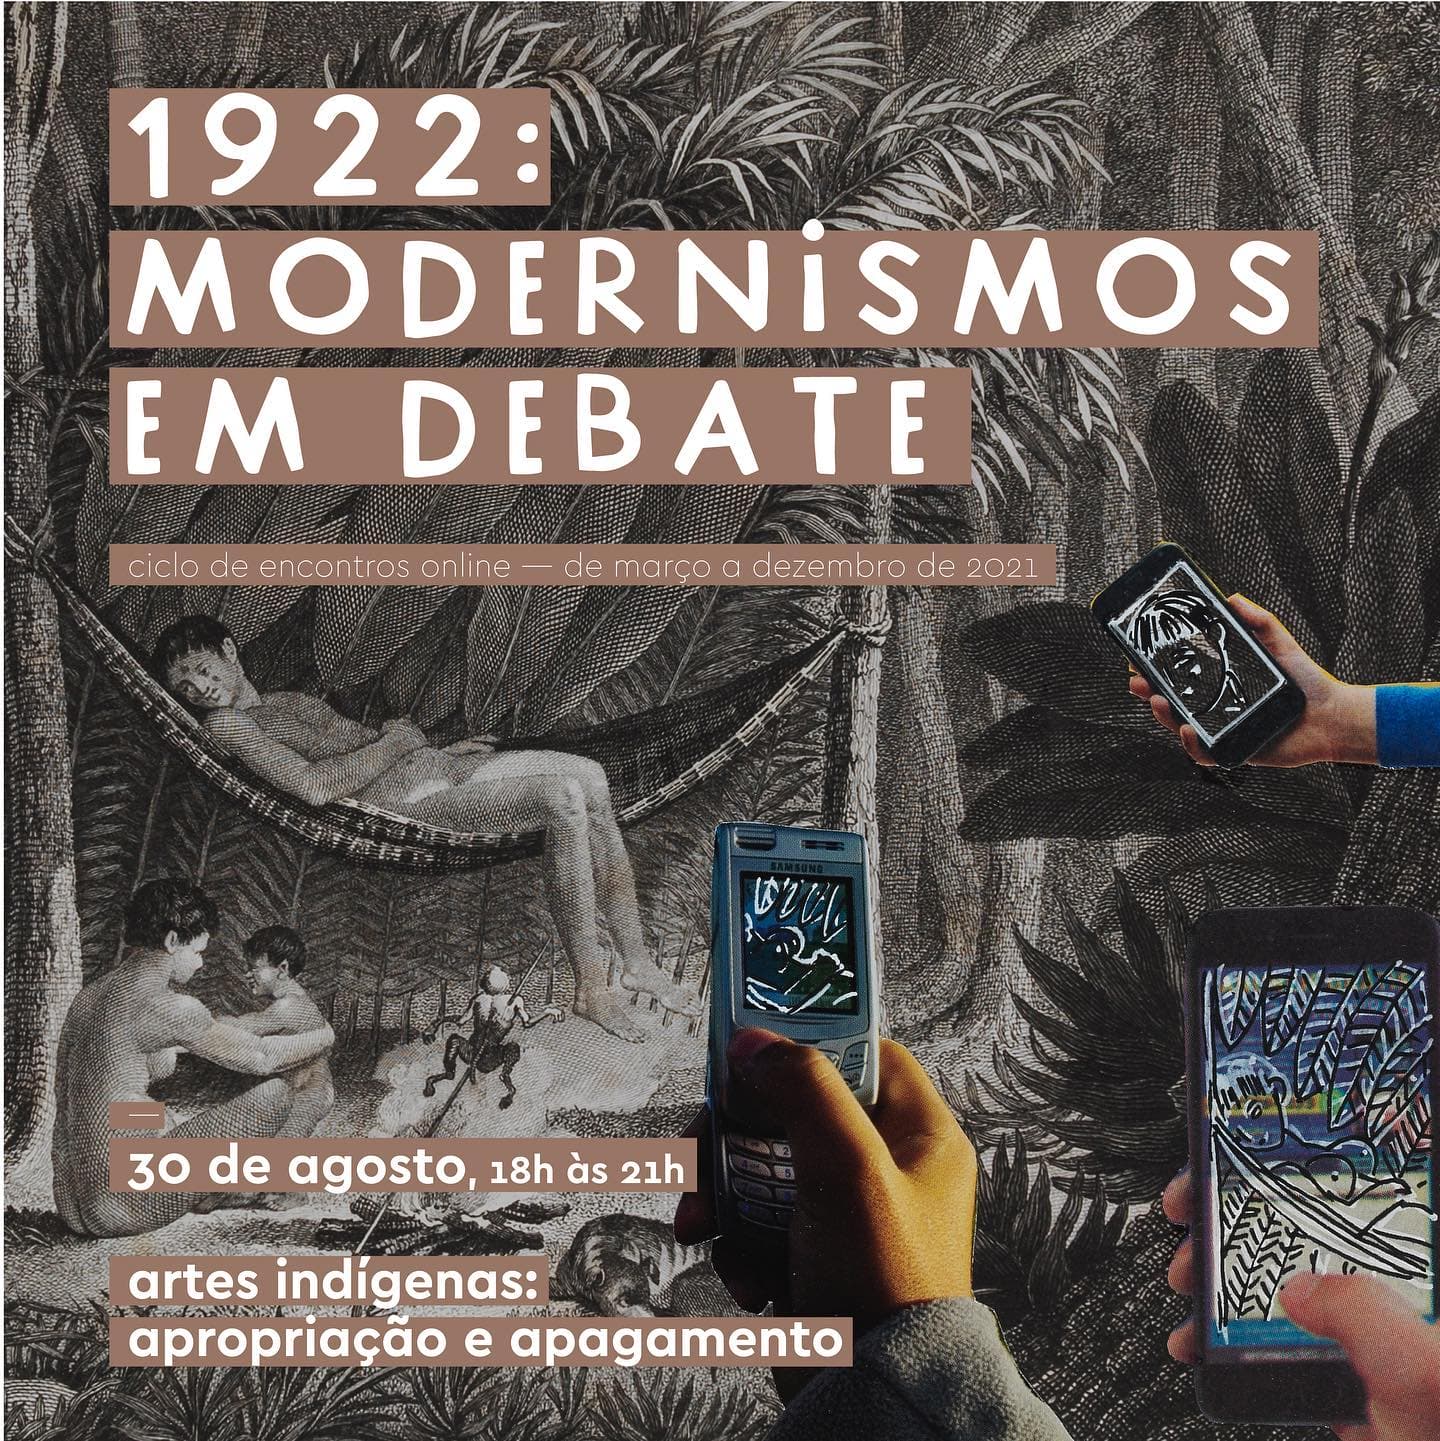 Sexto encontro online do ciclo 1922: modernismos em debate analisa a produção artística indígena